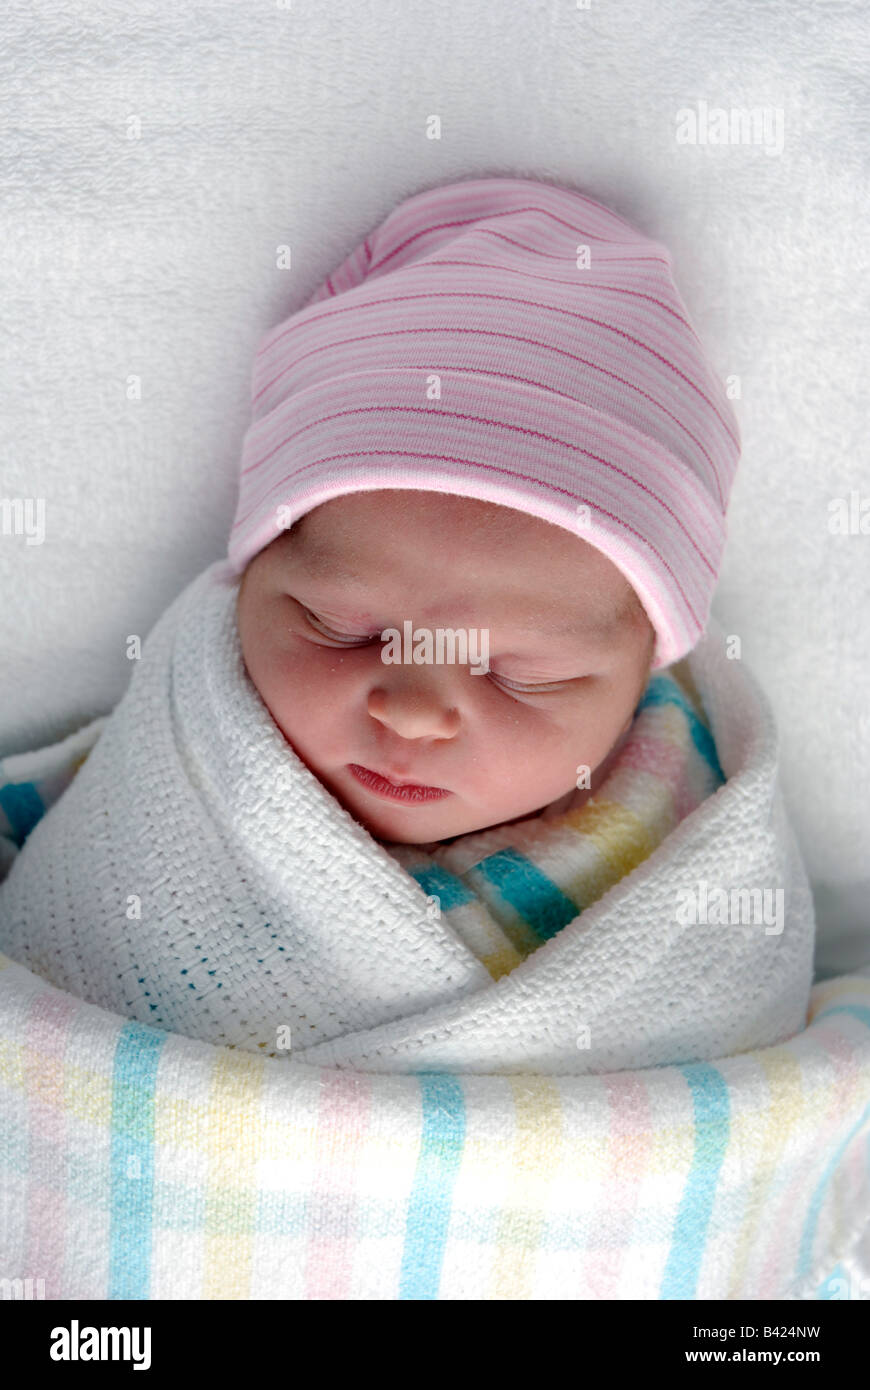 Un bebé recién nacido los envuelva en mantas Fotografía de stock - Alamy